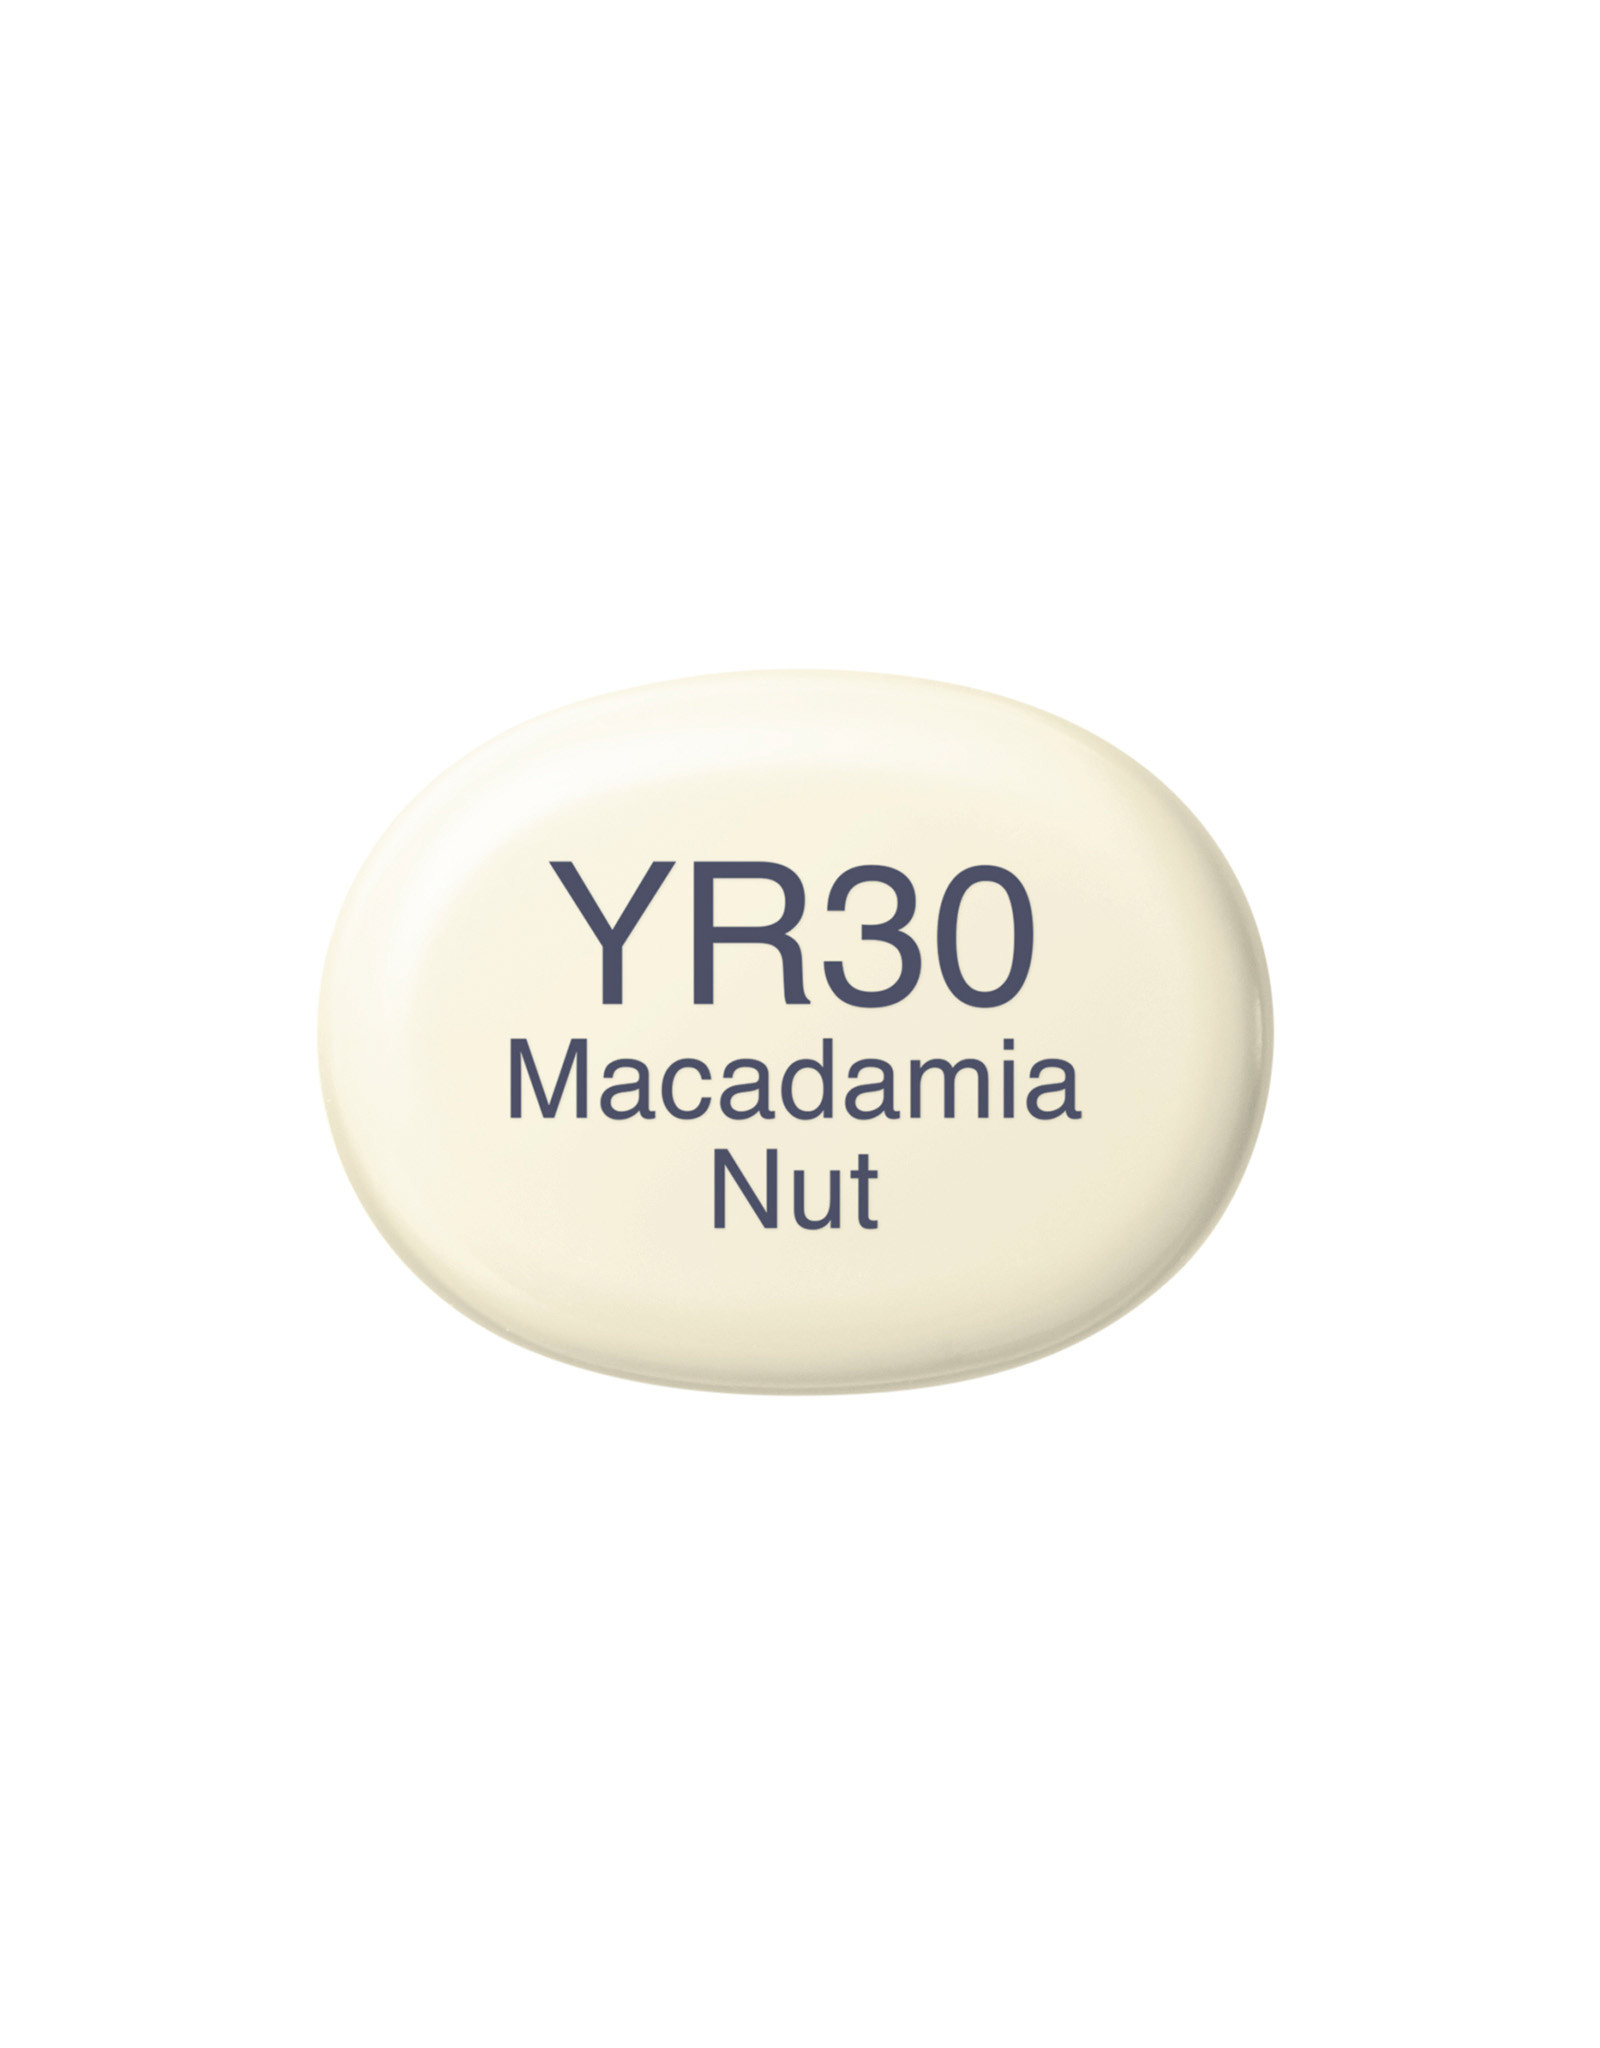 COPIC COPIC Sketch Marker YR30 Macadamia Nut